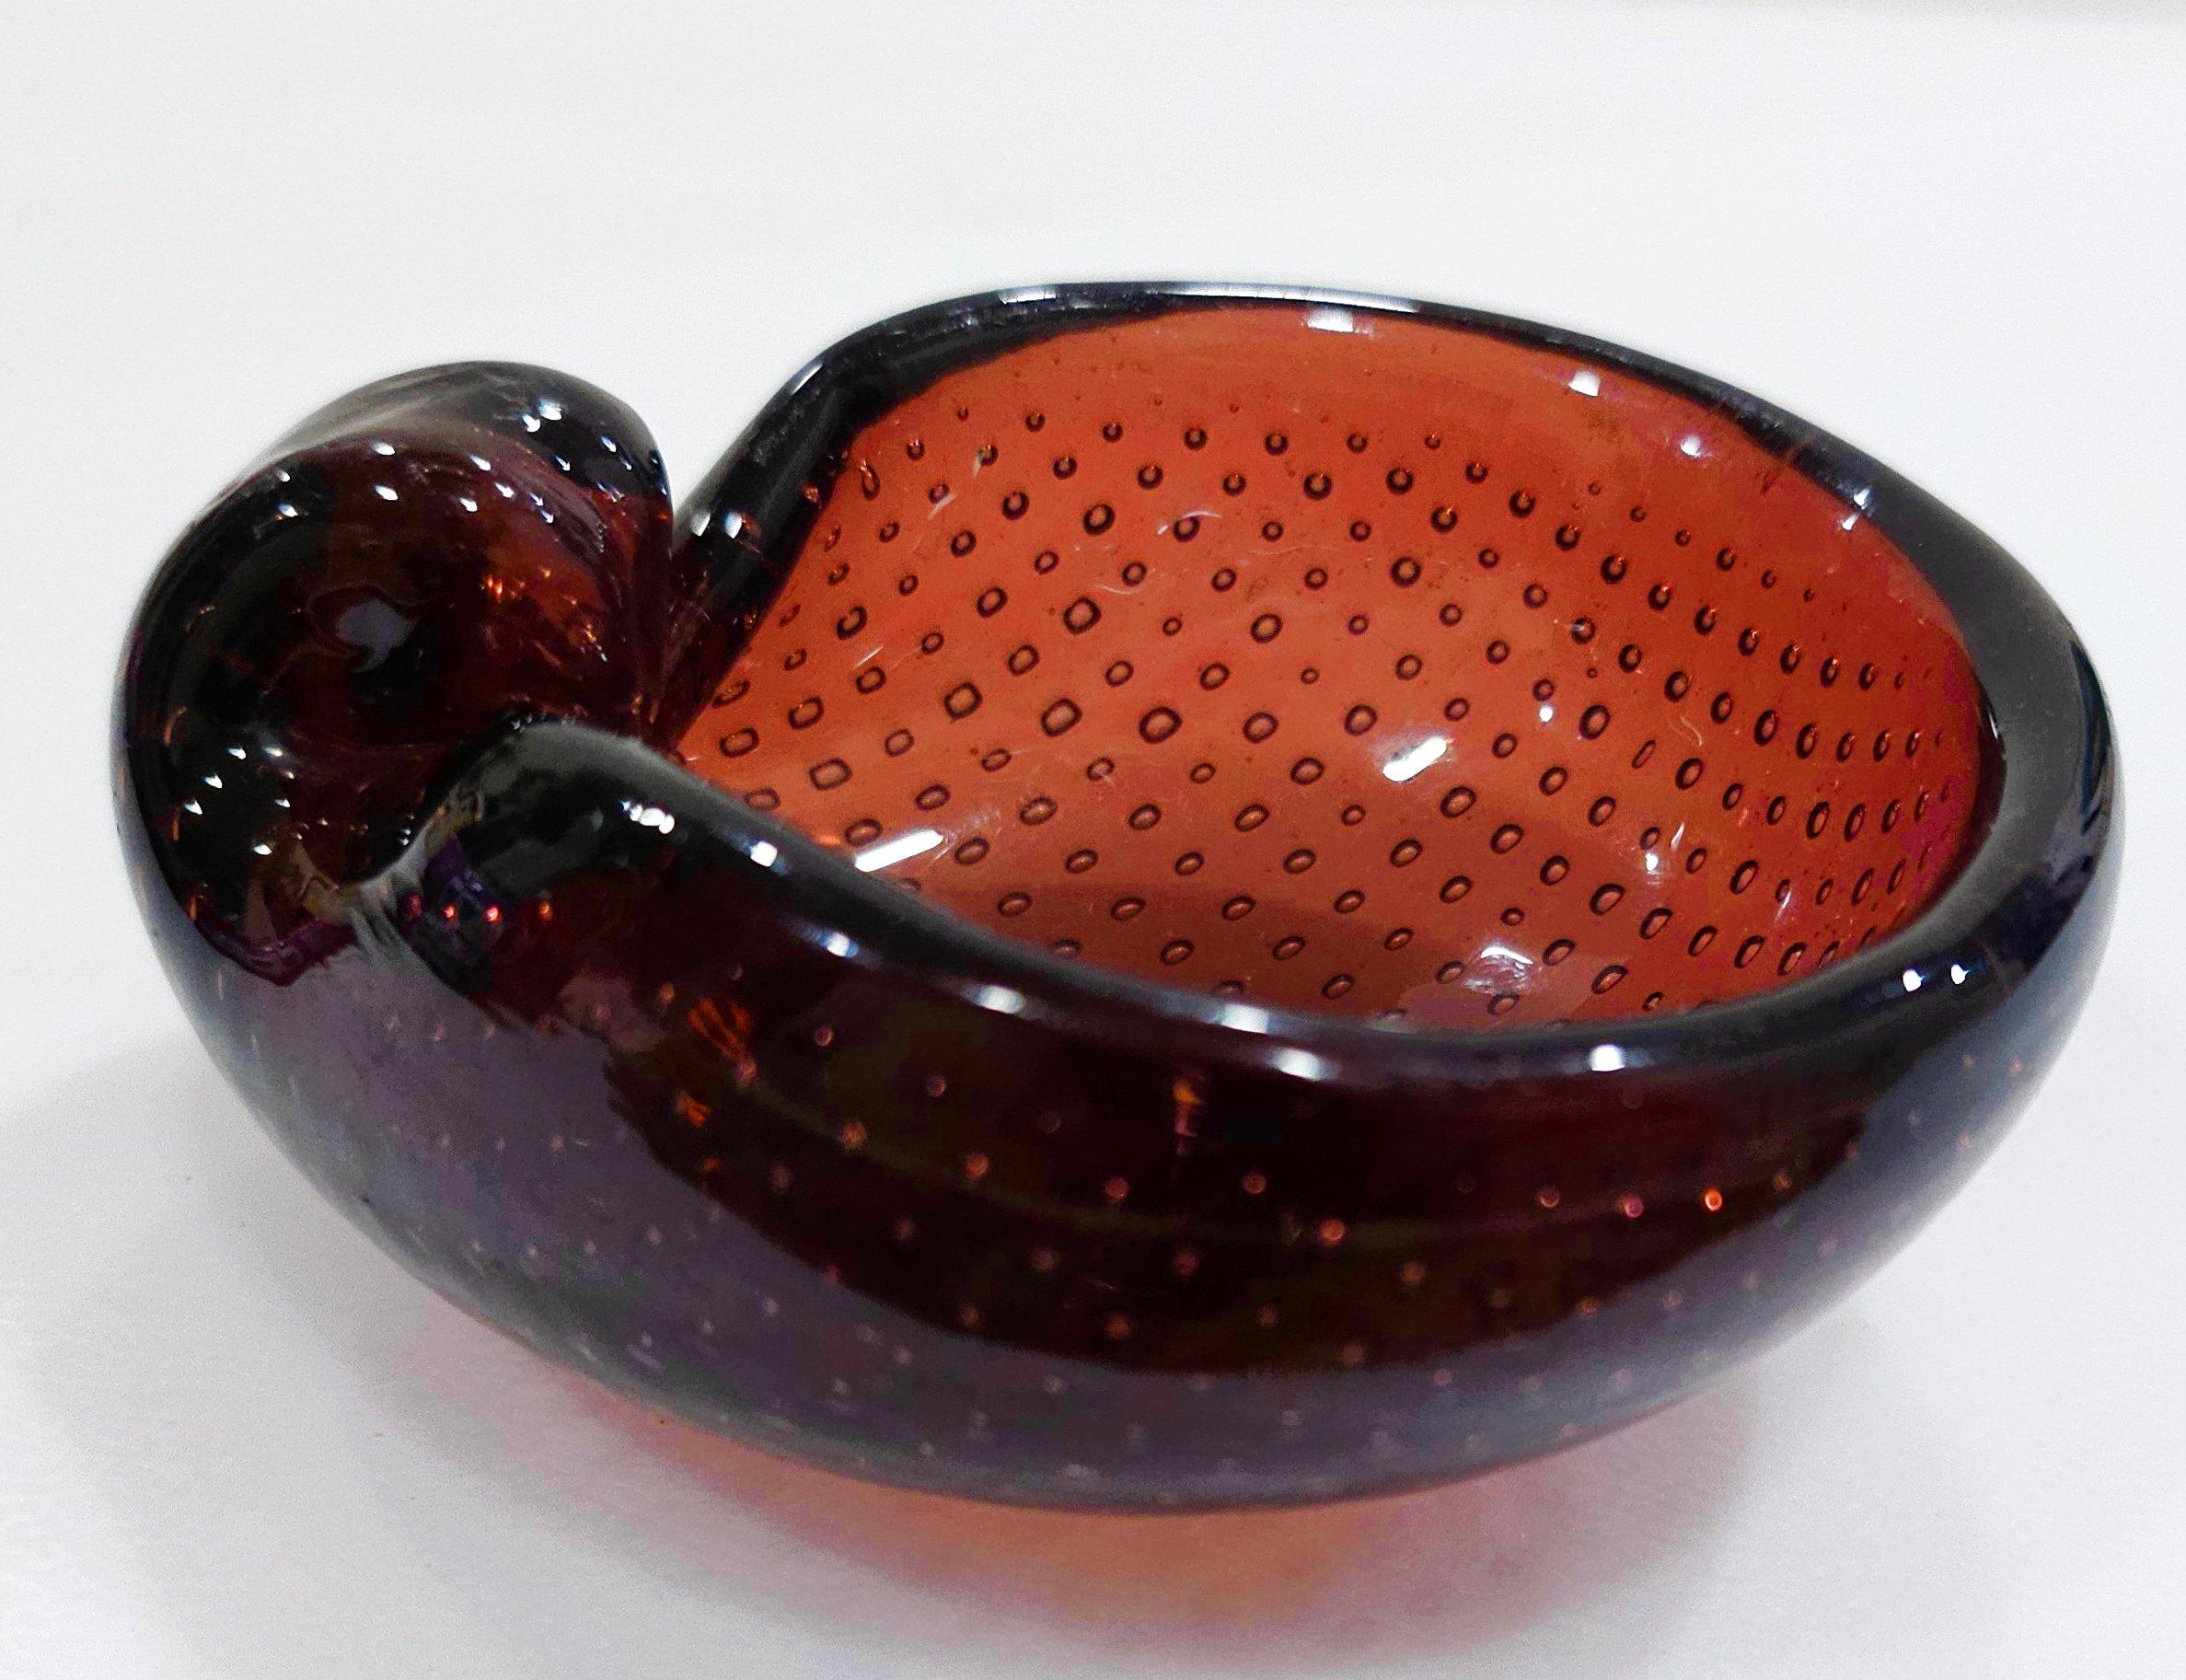 Vintage Murano Glass Bullicante Shell Bowl by Archimede Seguso
Très bel état vintage ! Ils sont appréciés pour la précision (et la forme) des bulles et le contrôle de la forme des bulles.
Pas de fissures ni d'éclats.
Environ 3,5